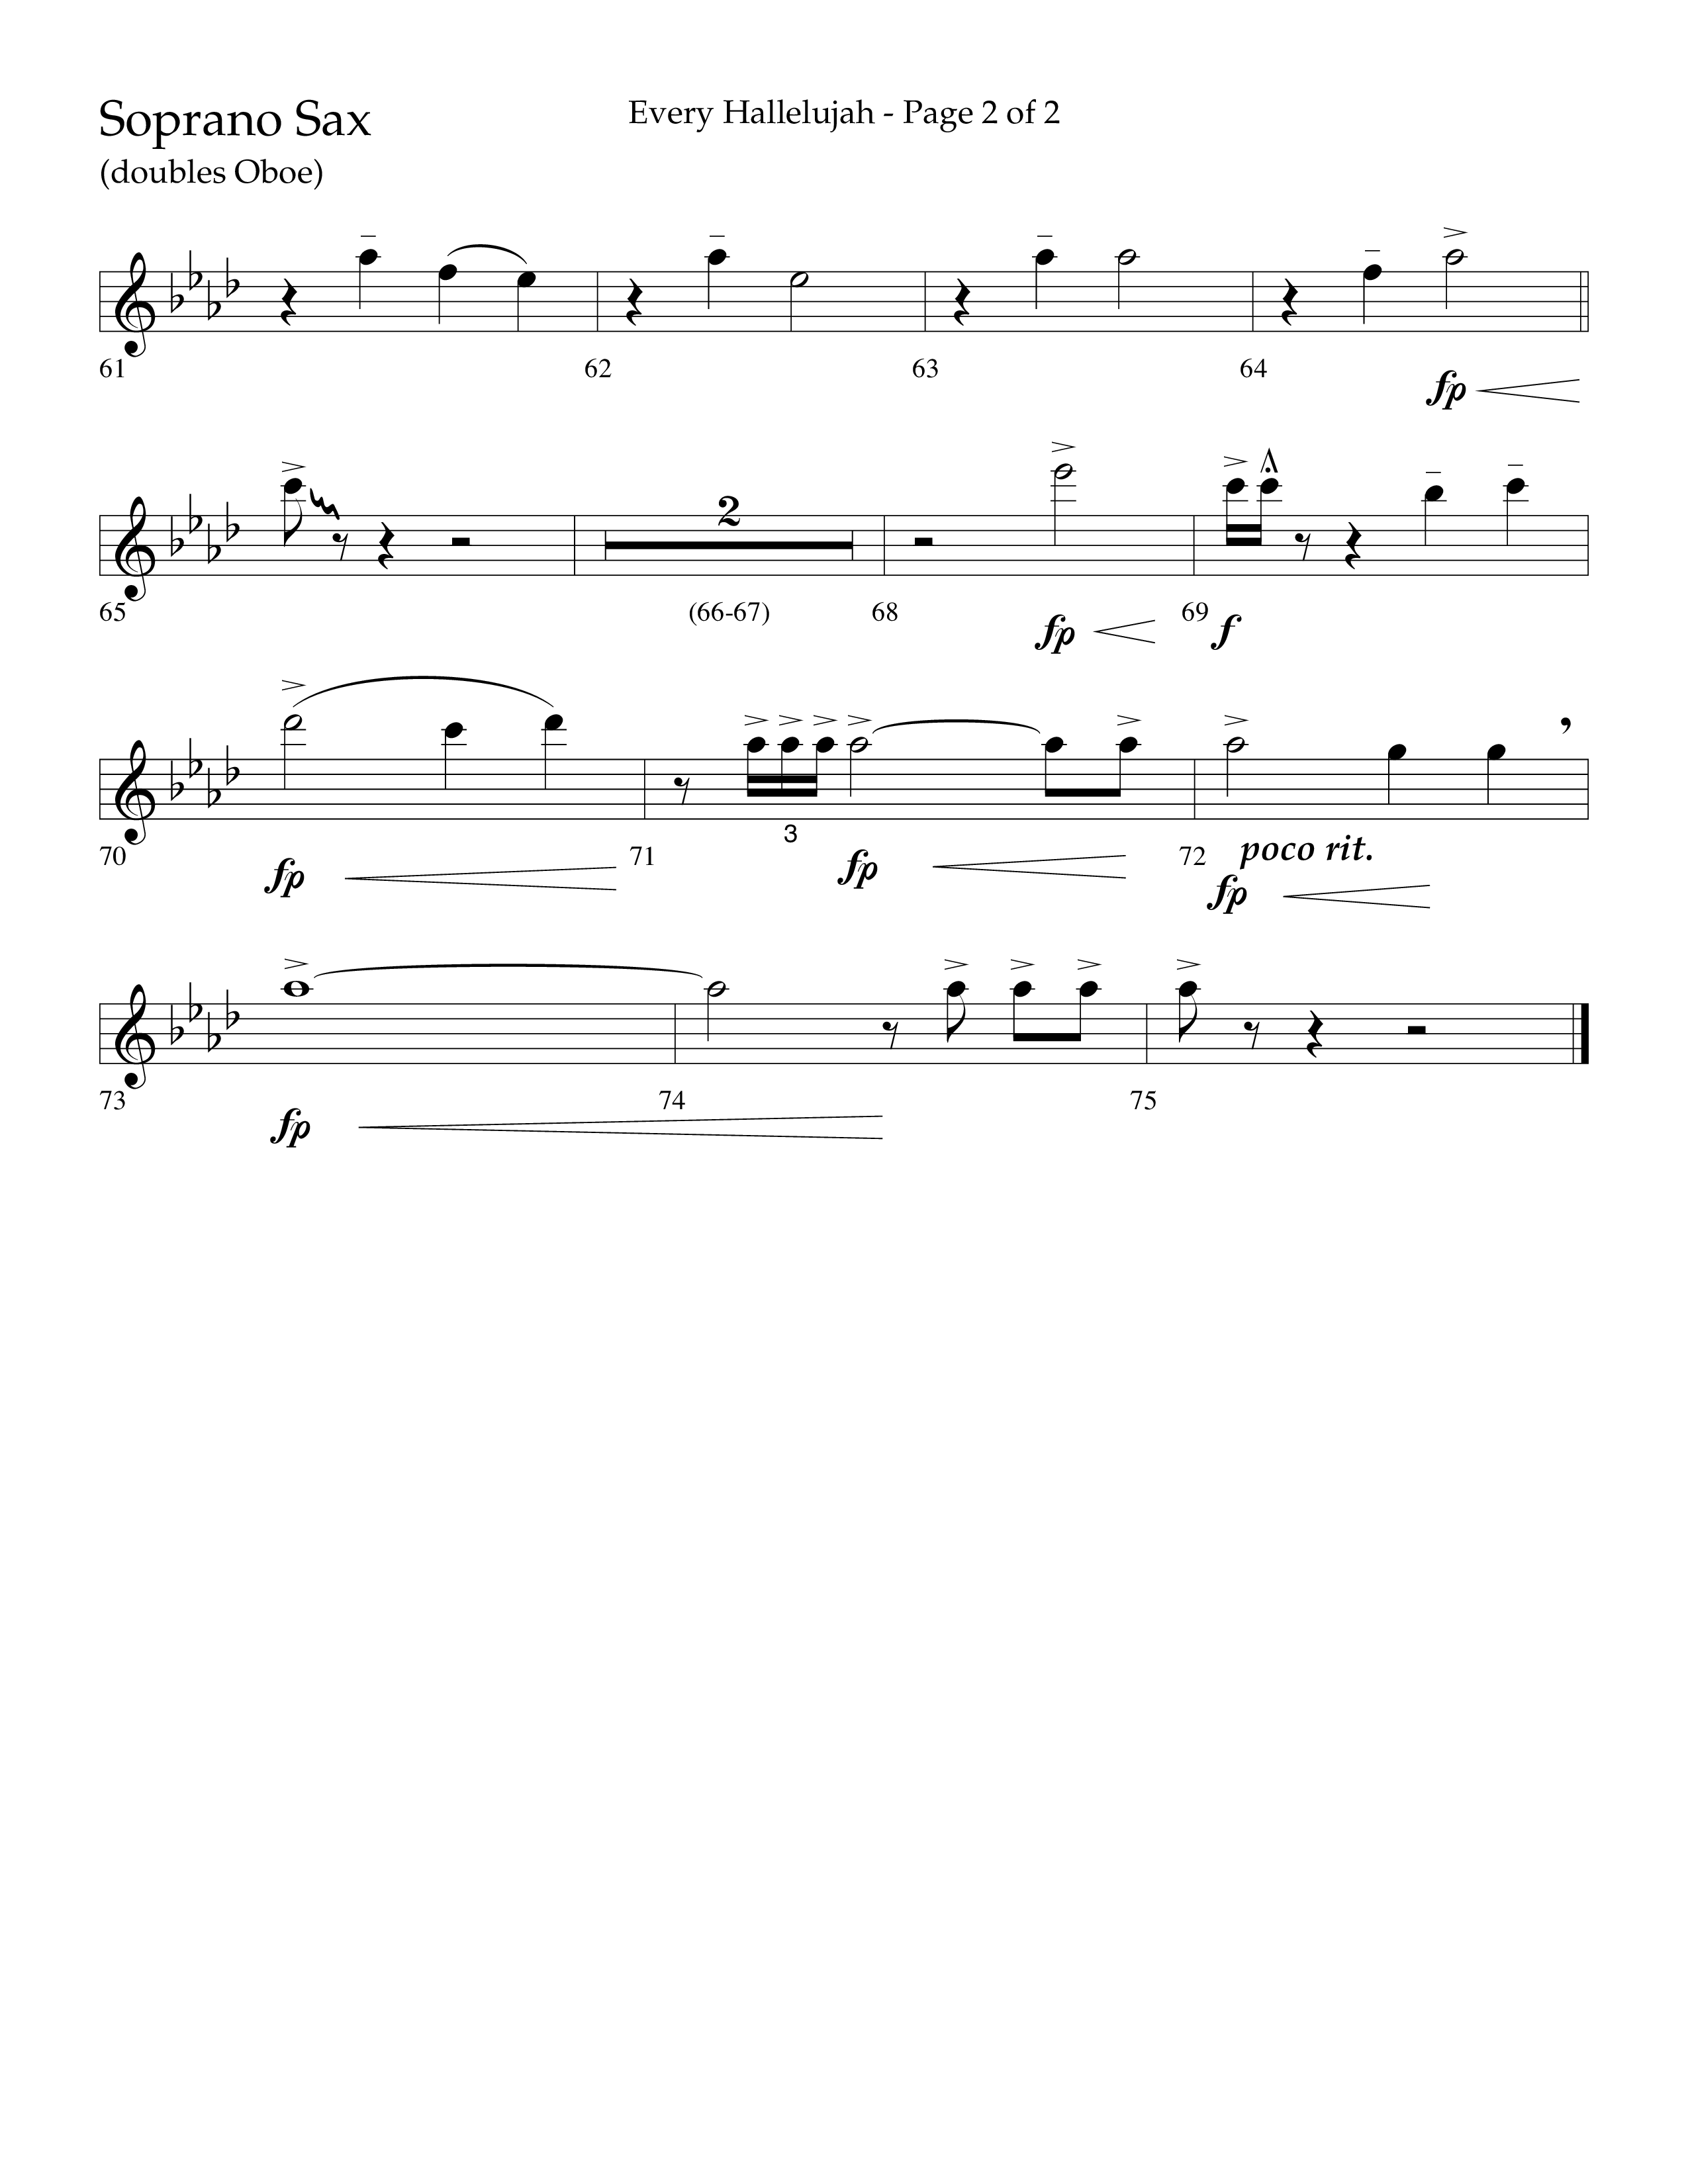 Every Hallelujah (Choral Anthem SATB) Soprano Sax (Lifeway Choral / Arr. Marty Hamby)